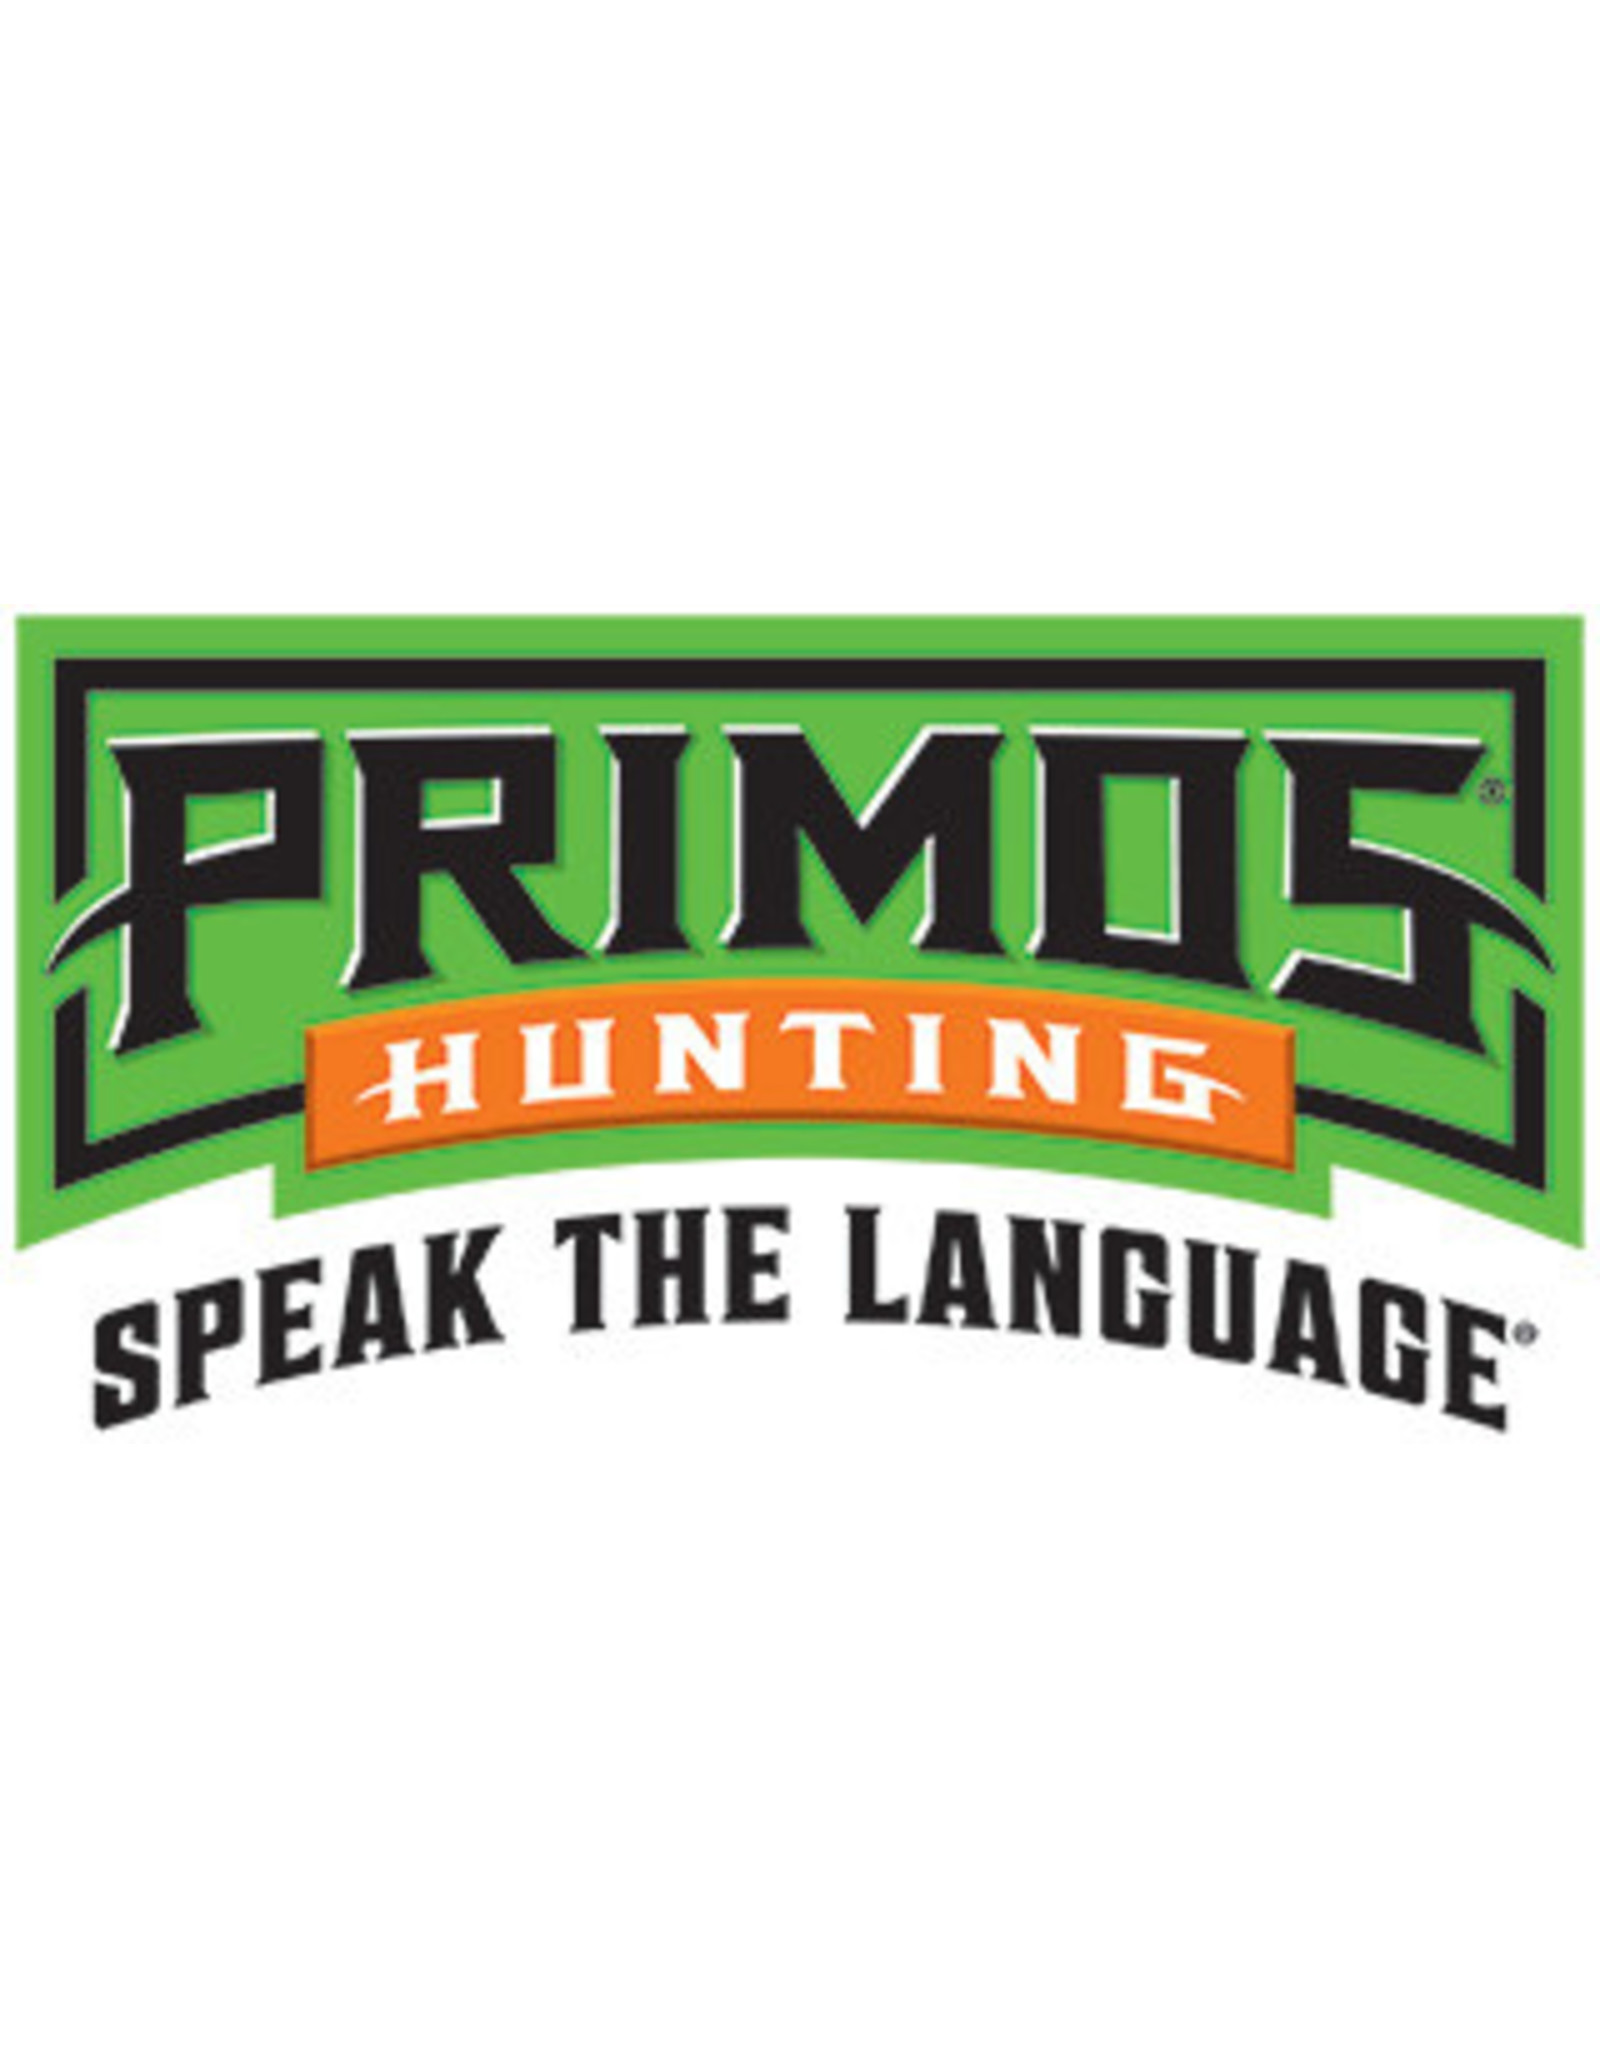 Primos Primos Mouse Squeeze Predator Call